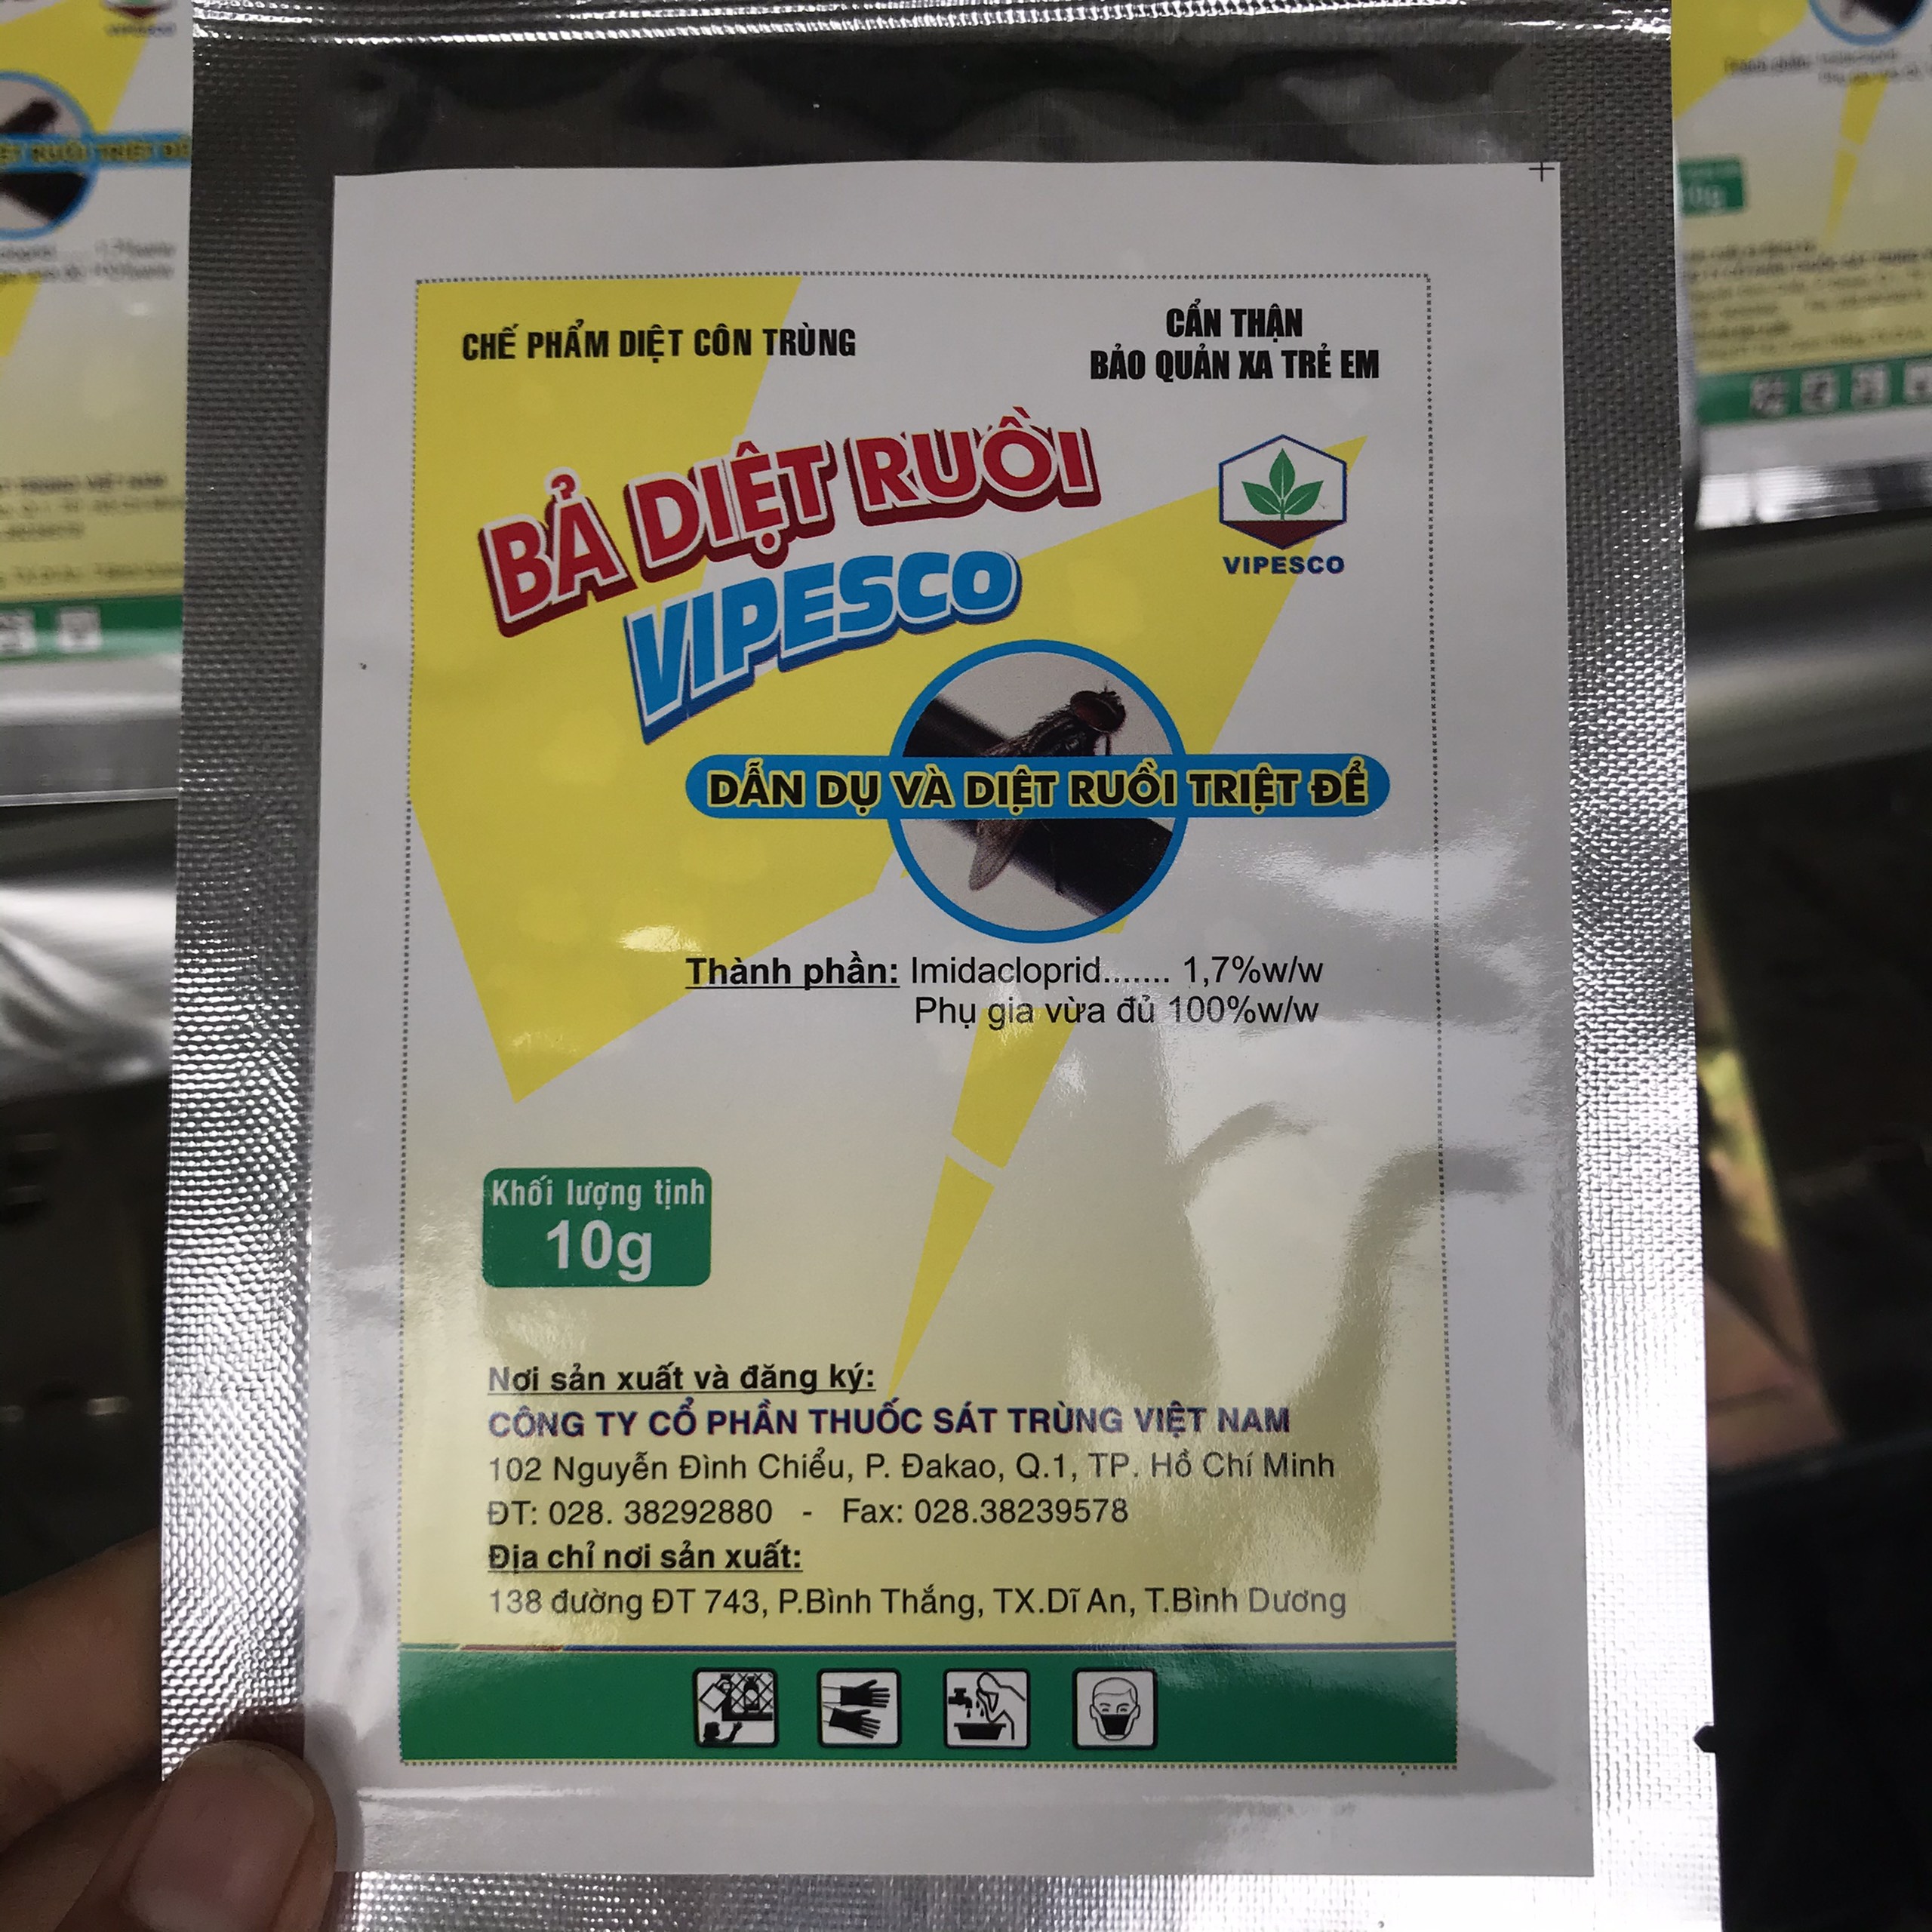 Bả diệt ruồi Vipesco - Gói 10g tiện dụng - Dẫn dụ và diệt ruồi triệt để